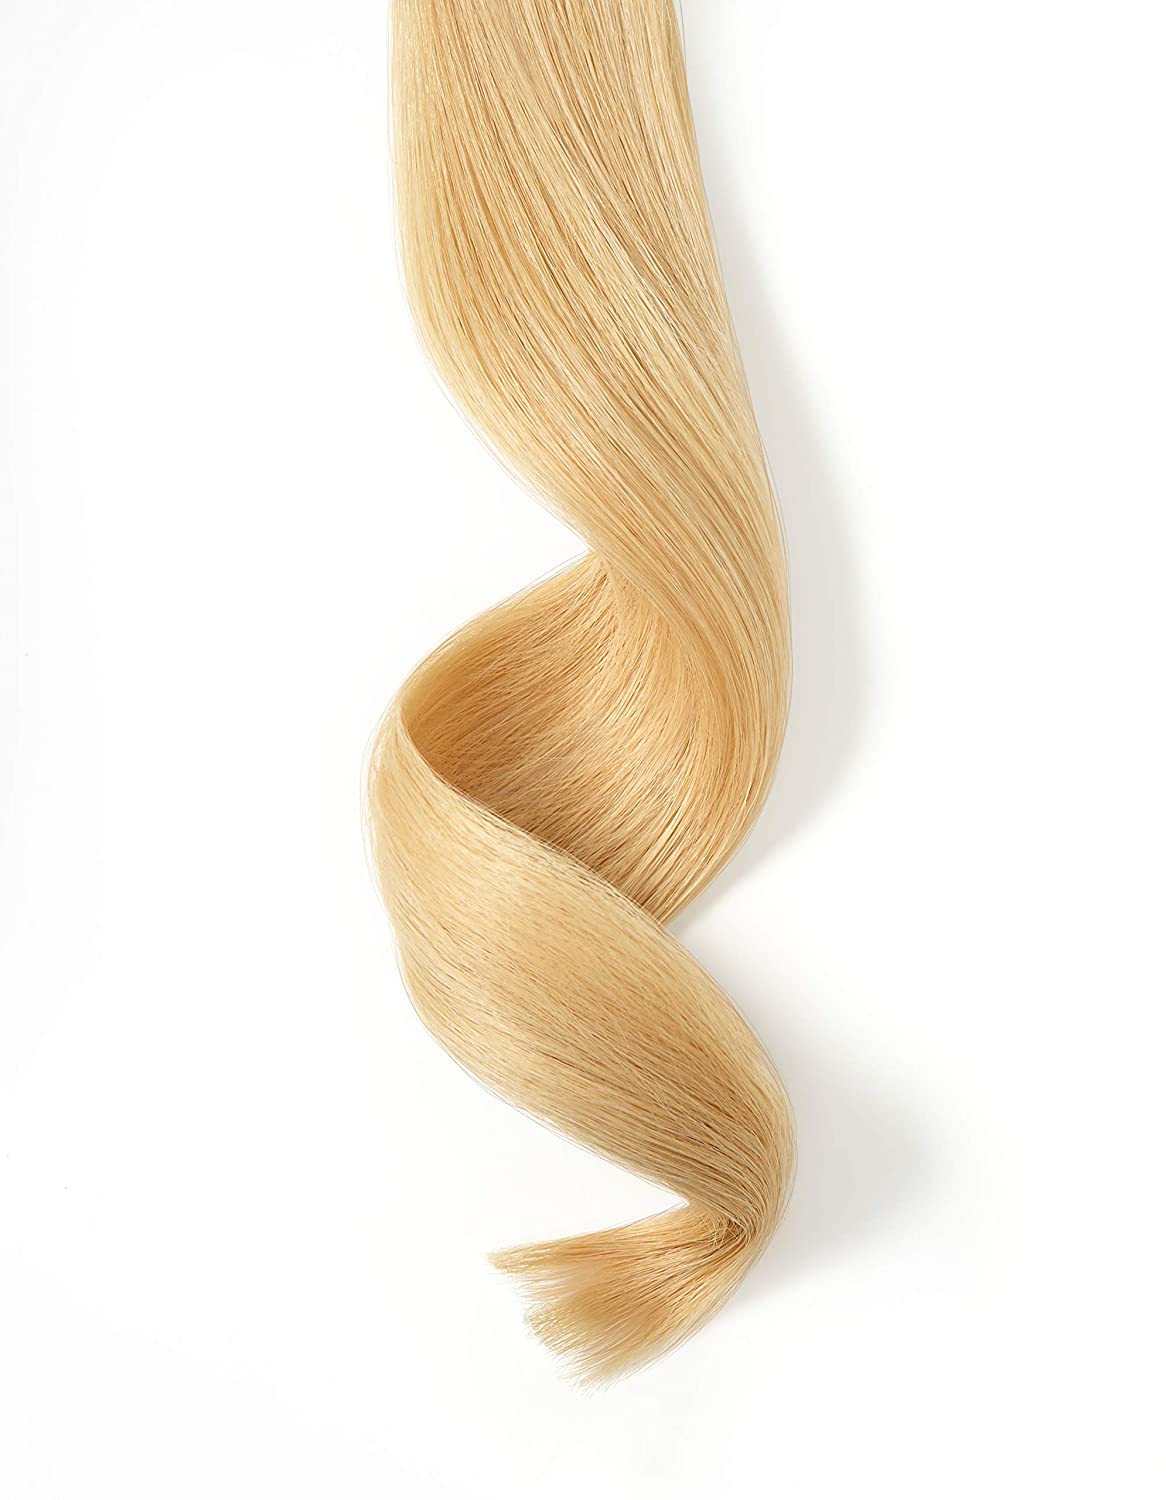 NINFAS GOLD LINE: #20 Lightest Neutral Blonde / Lightest Gold Blonde Remy Tape In